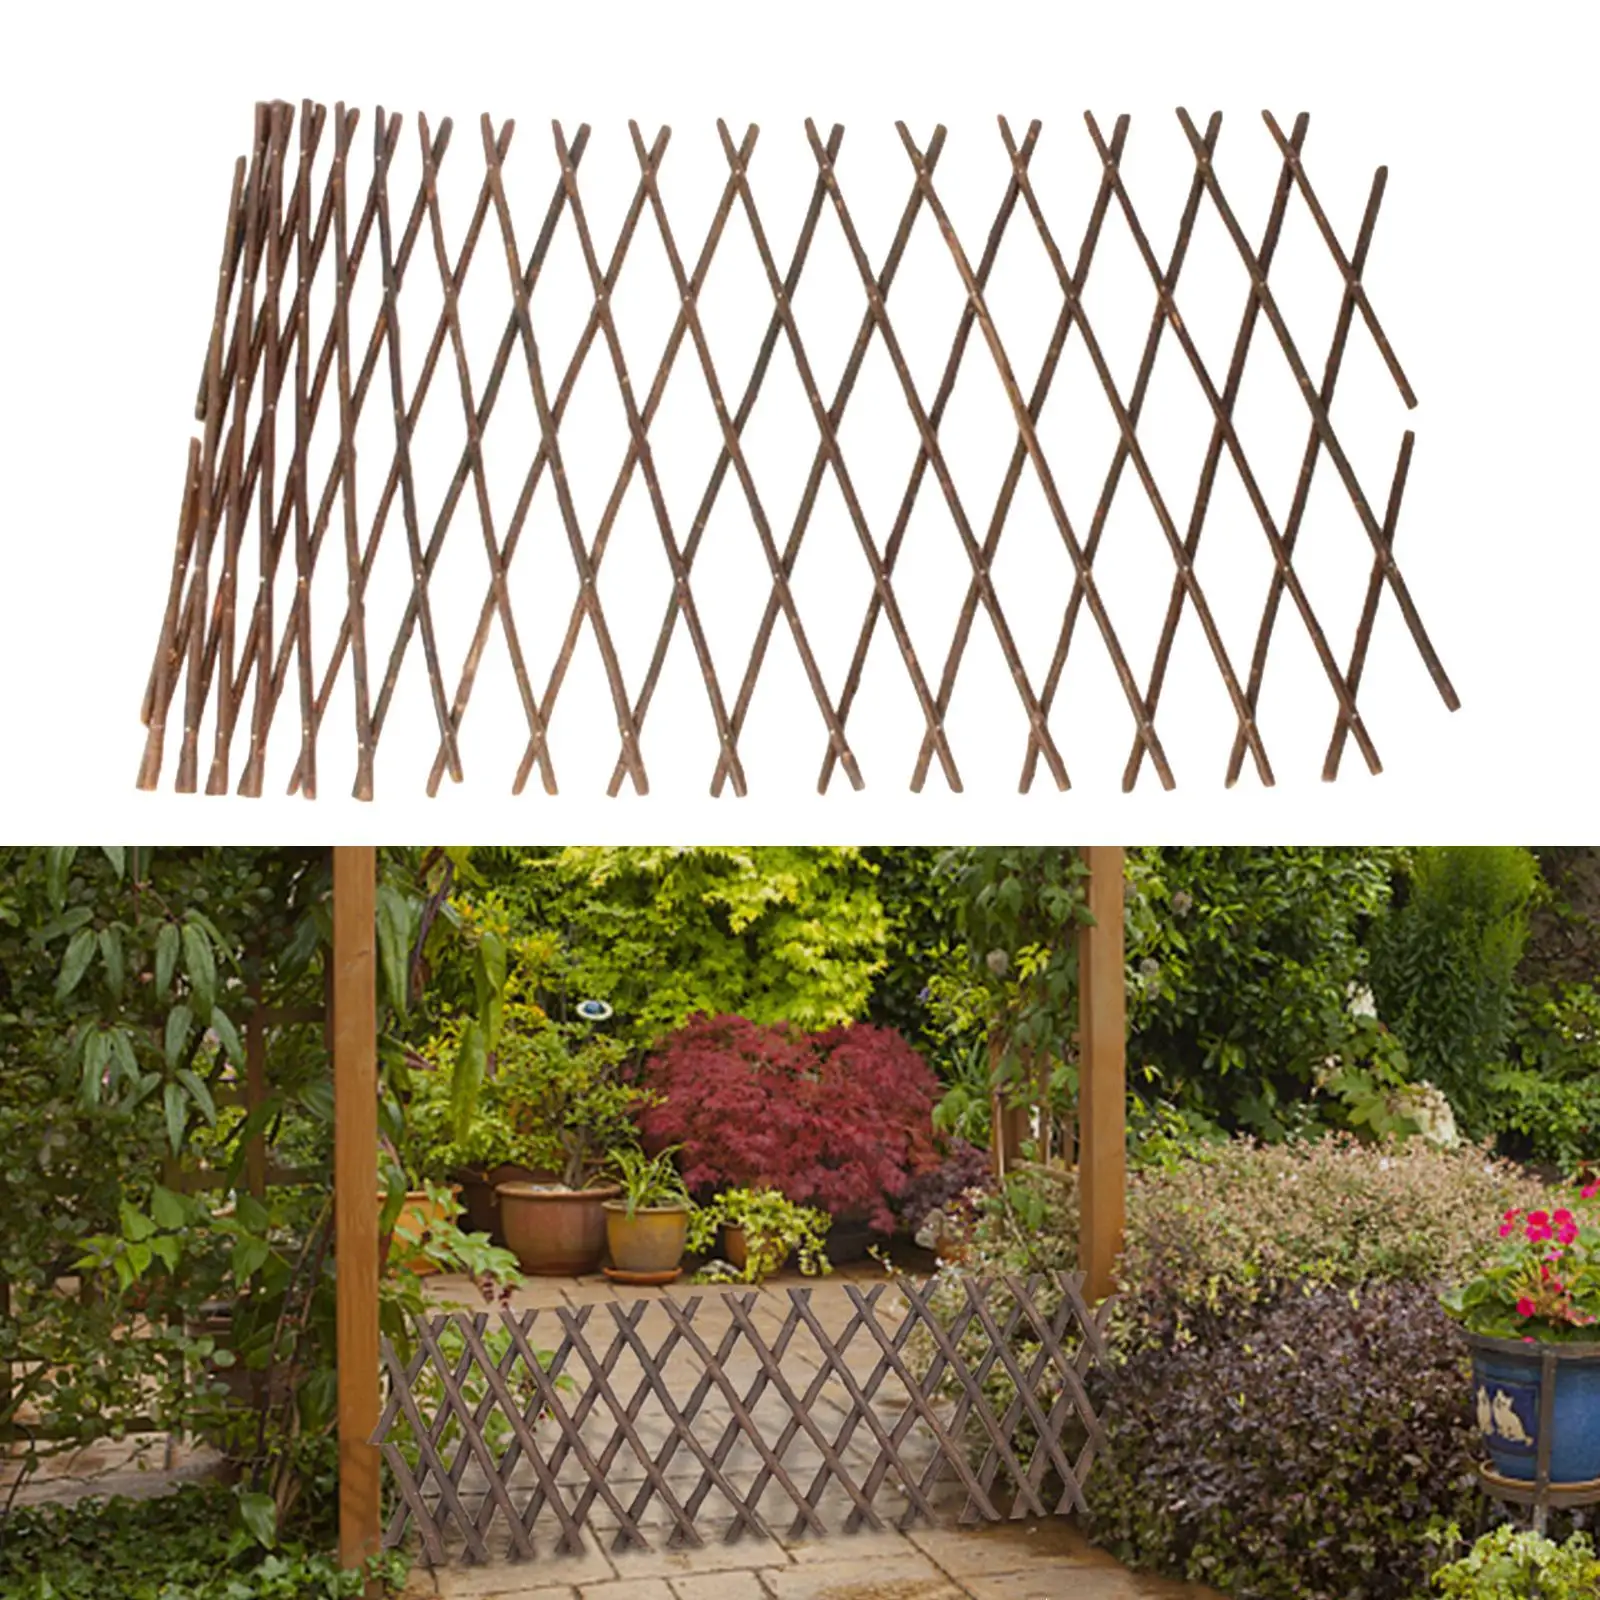 Expandable Wooden Garden Trellis Retractable Plant Lattice Fence Panel